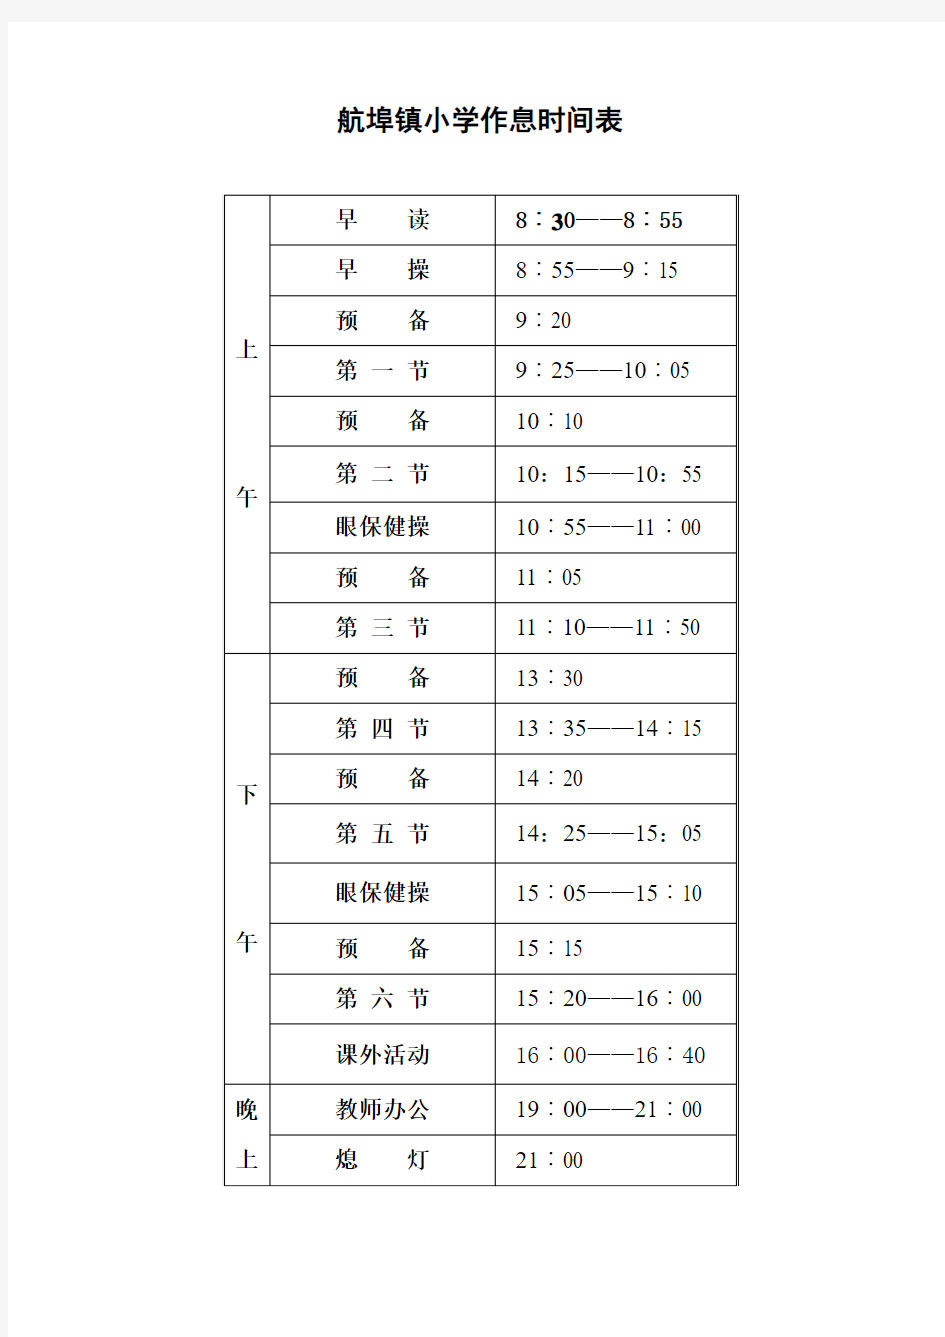 中心小学作息时间表(最新版)